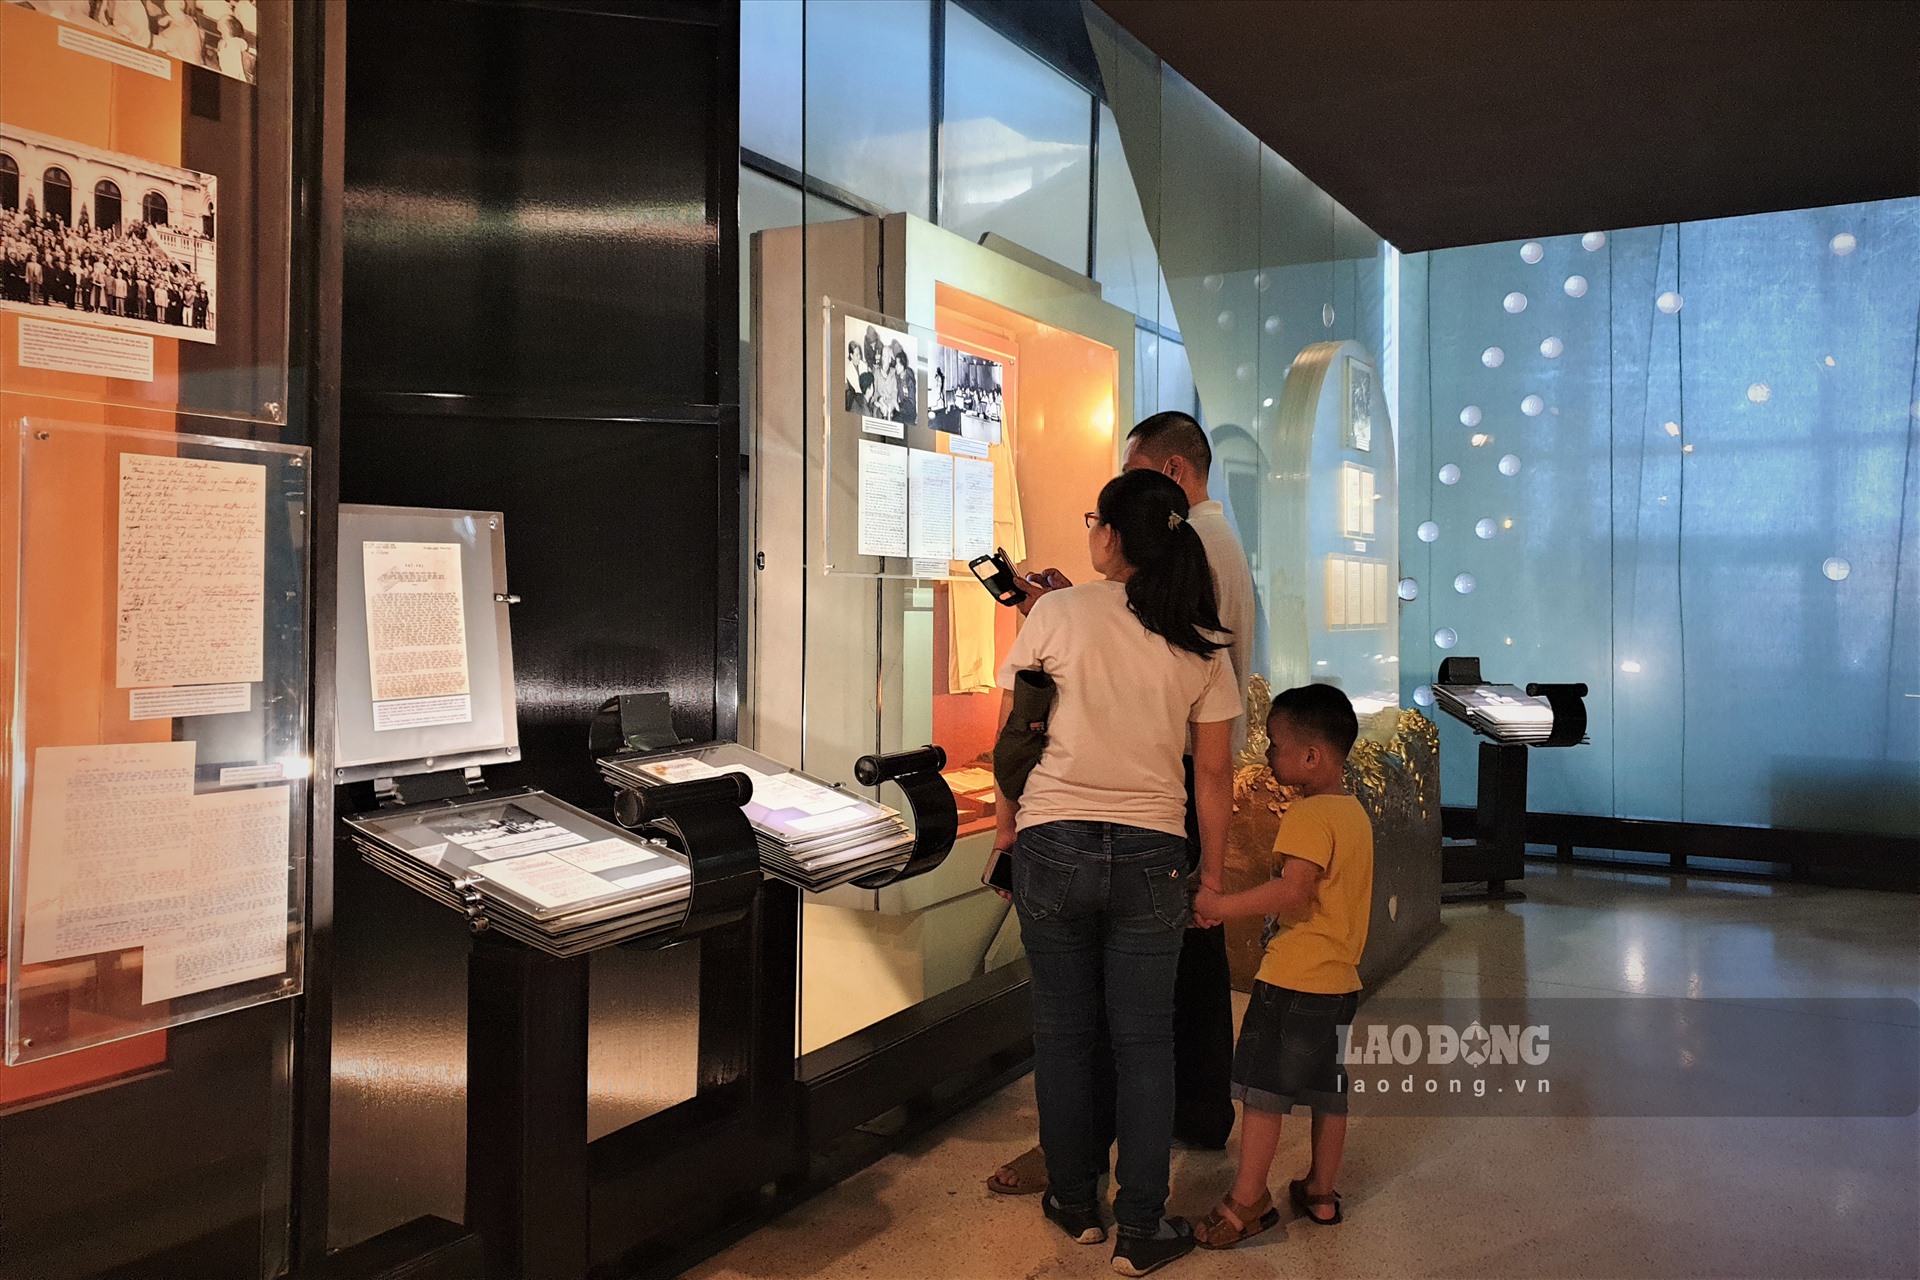 Nhiều gia đình đưa con nhỏ đến Bảo tàng Hồ Chính Minh để dạy cho con về sự khiêm tốn, giản dị, nhân hậu qua hình tượng của Bác.